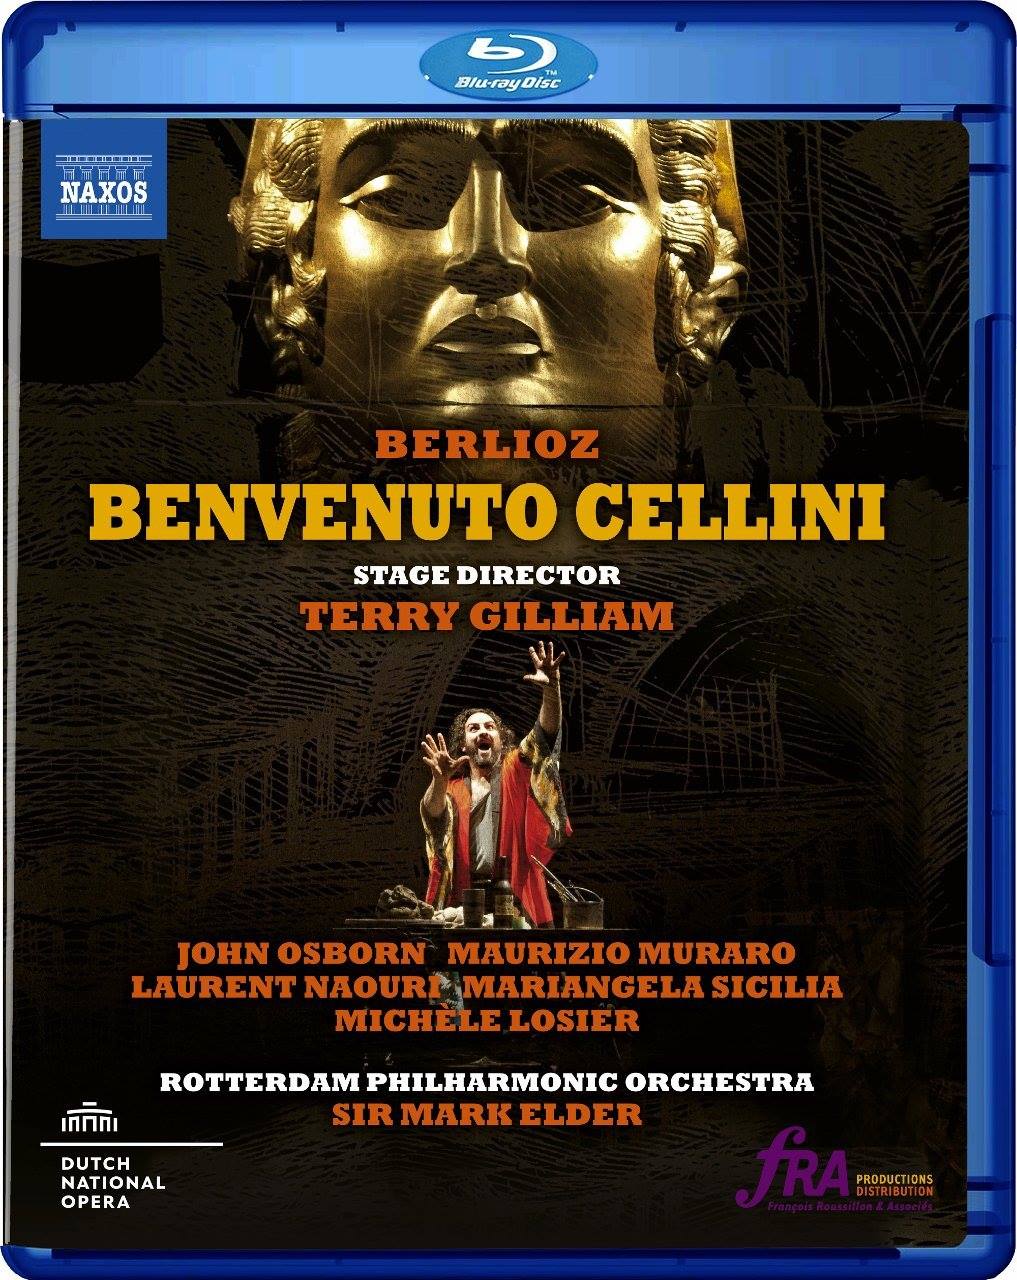 Berlioz "Benvenuto Cellini" DVD